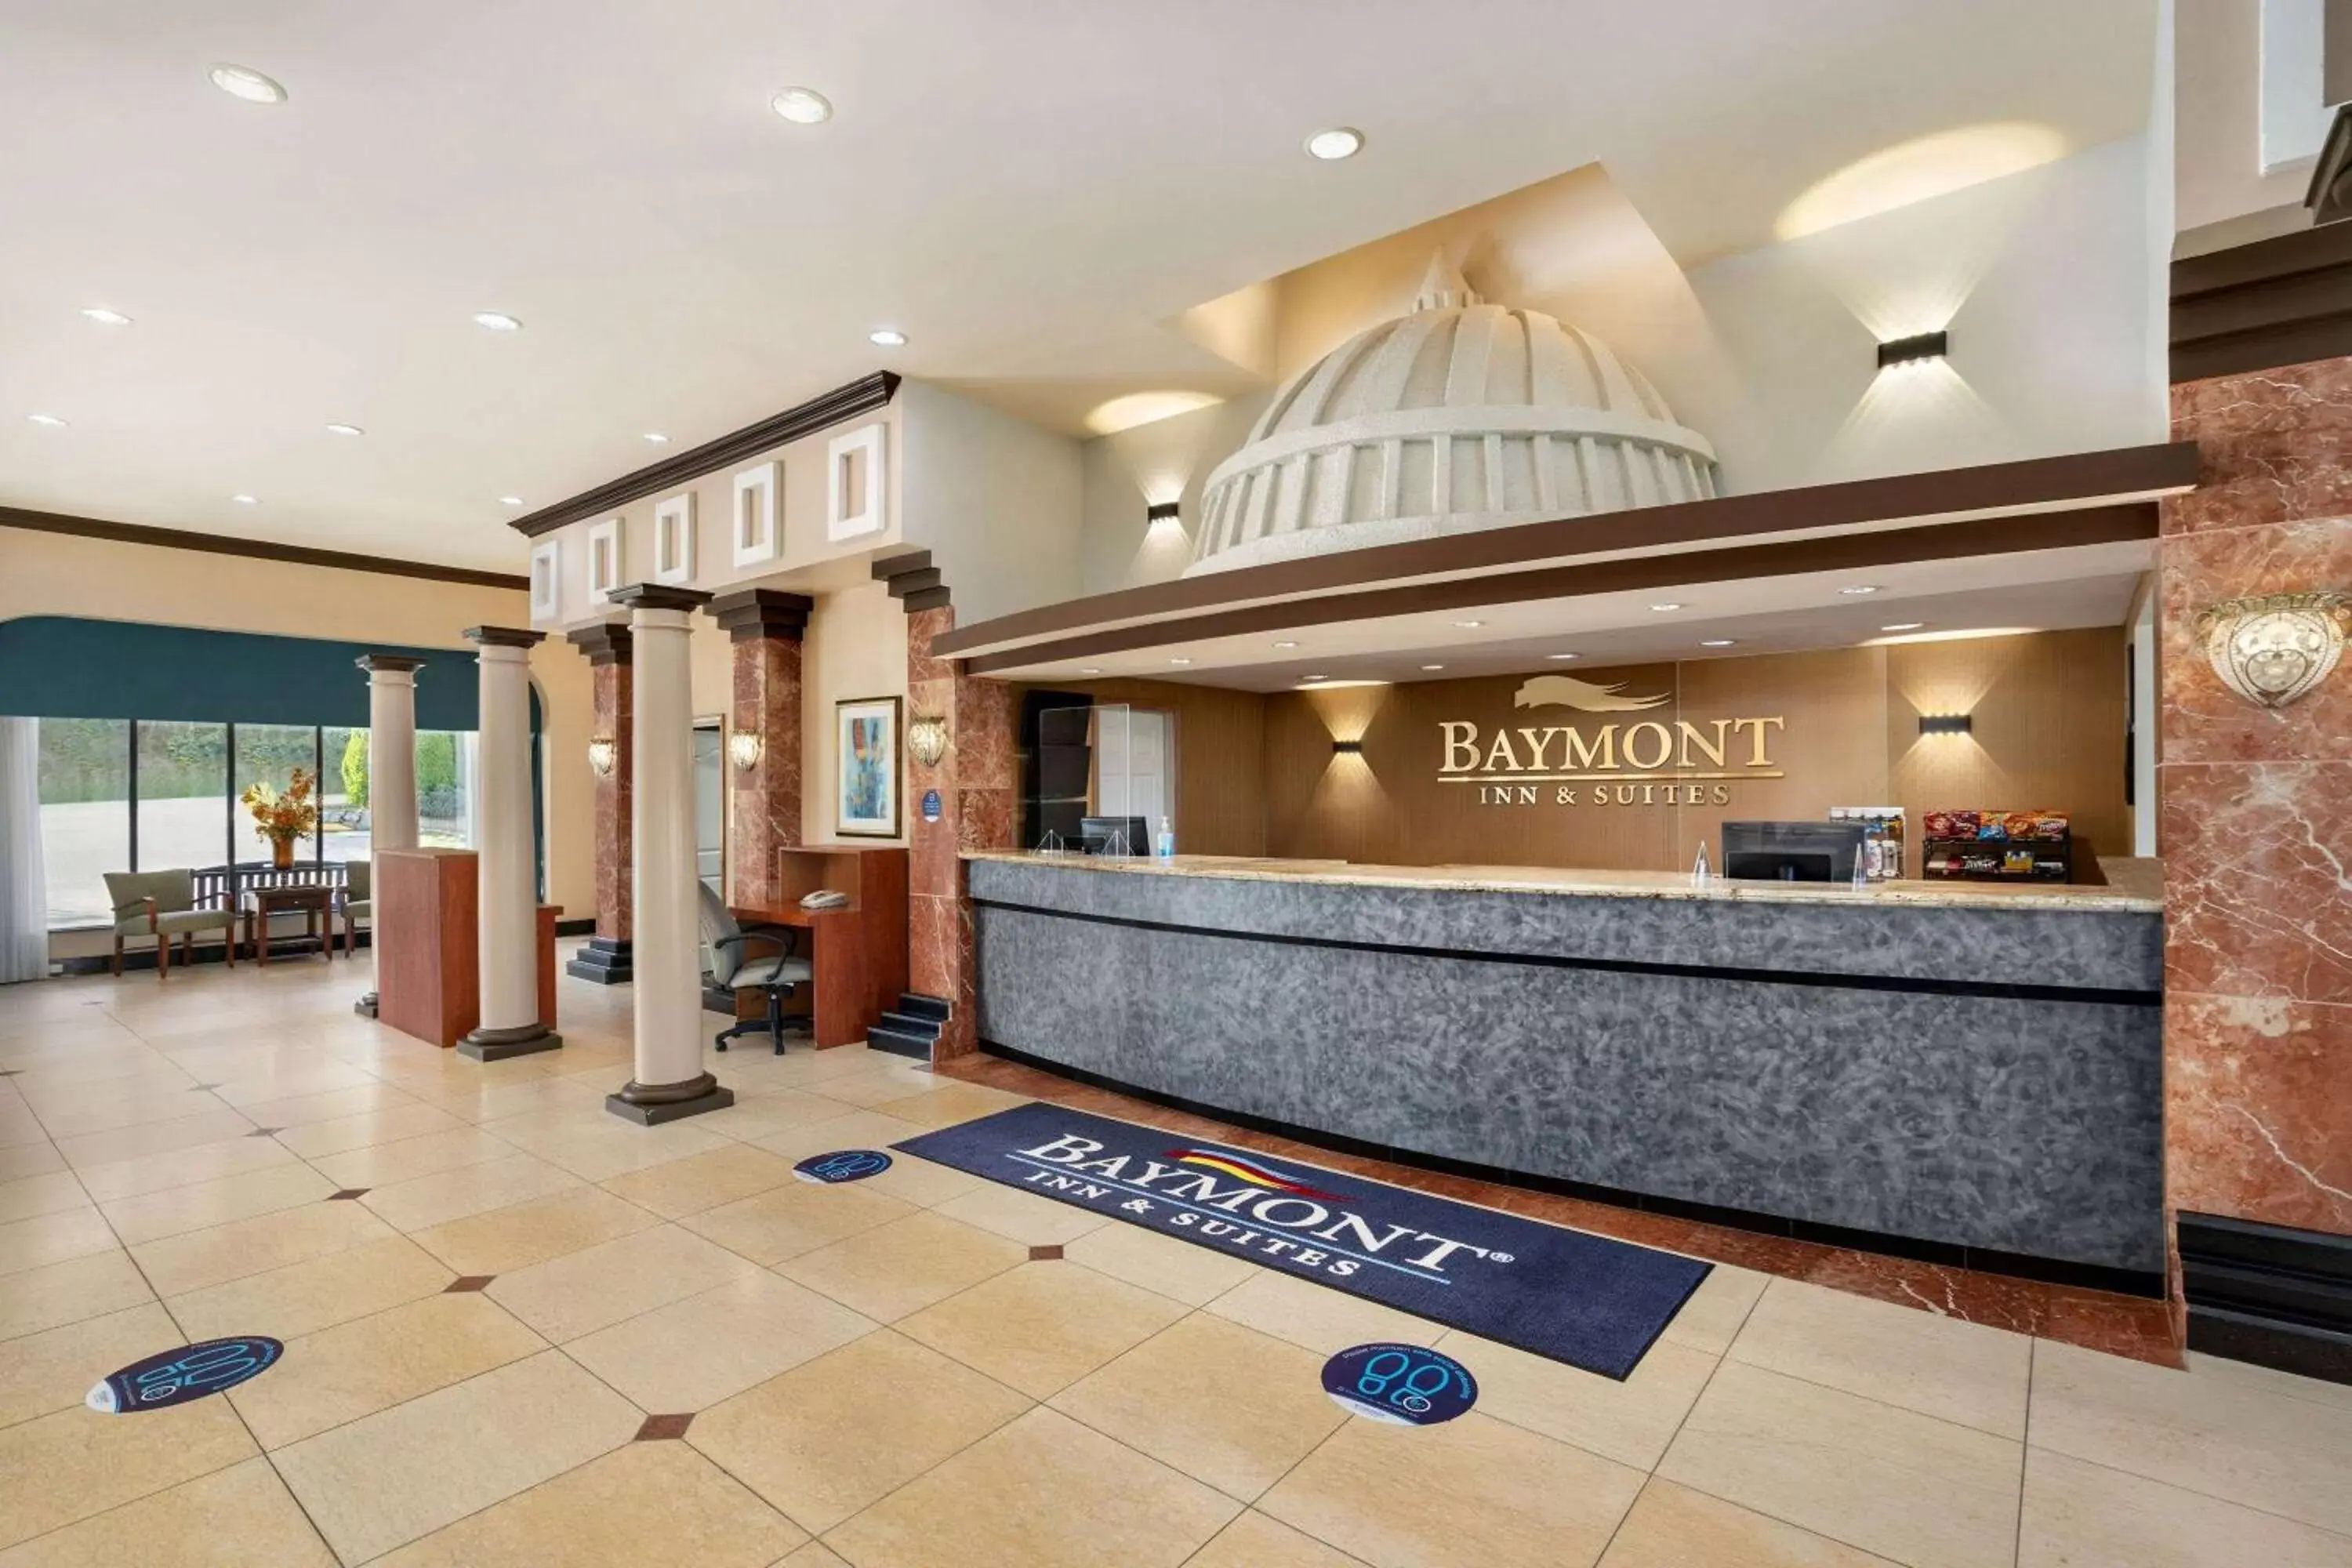 Lobby or reception, Lobby/Reception in Baymont by Wyndham Bremerton WA